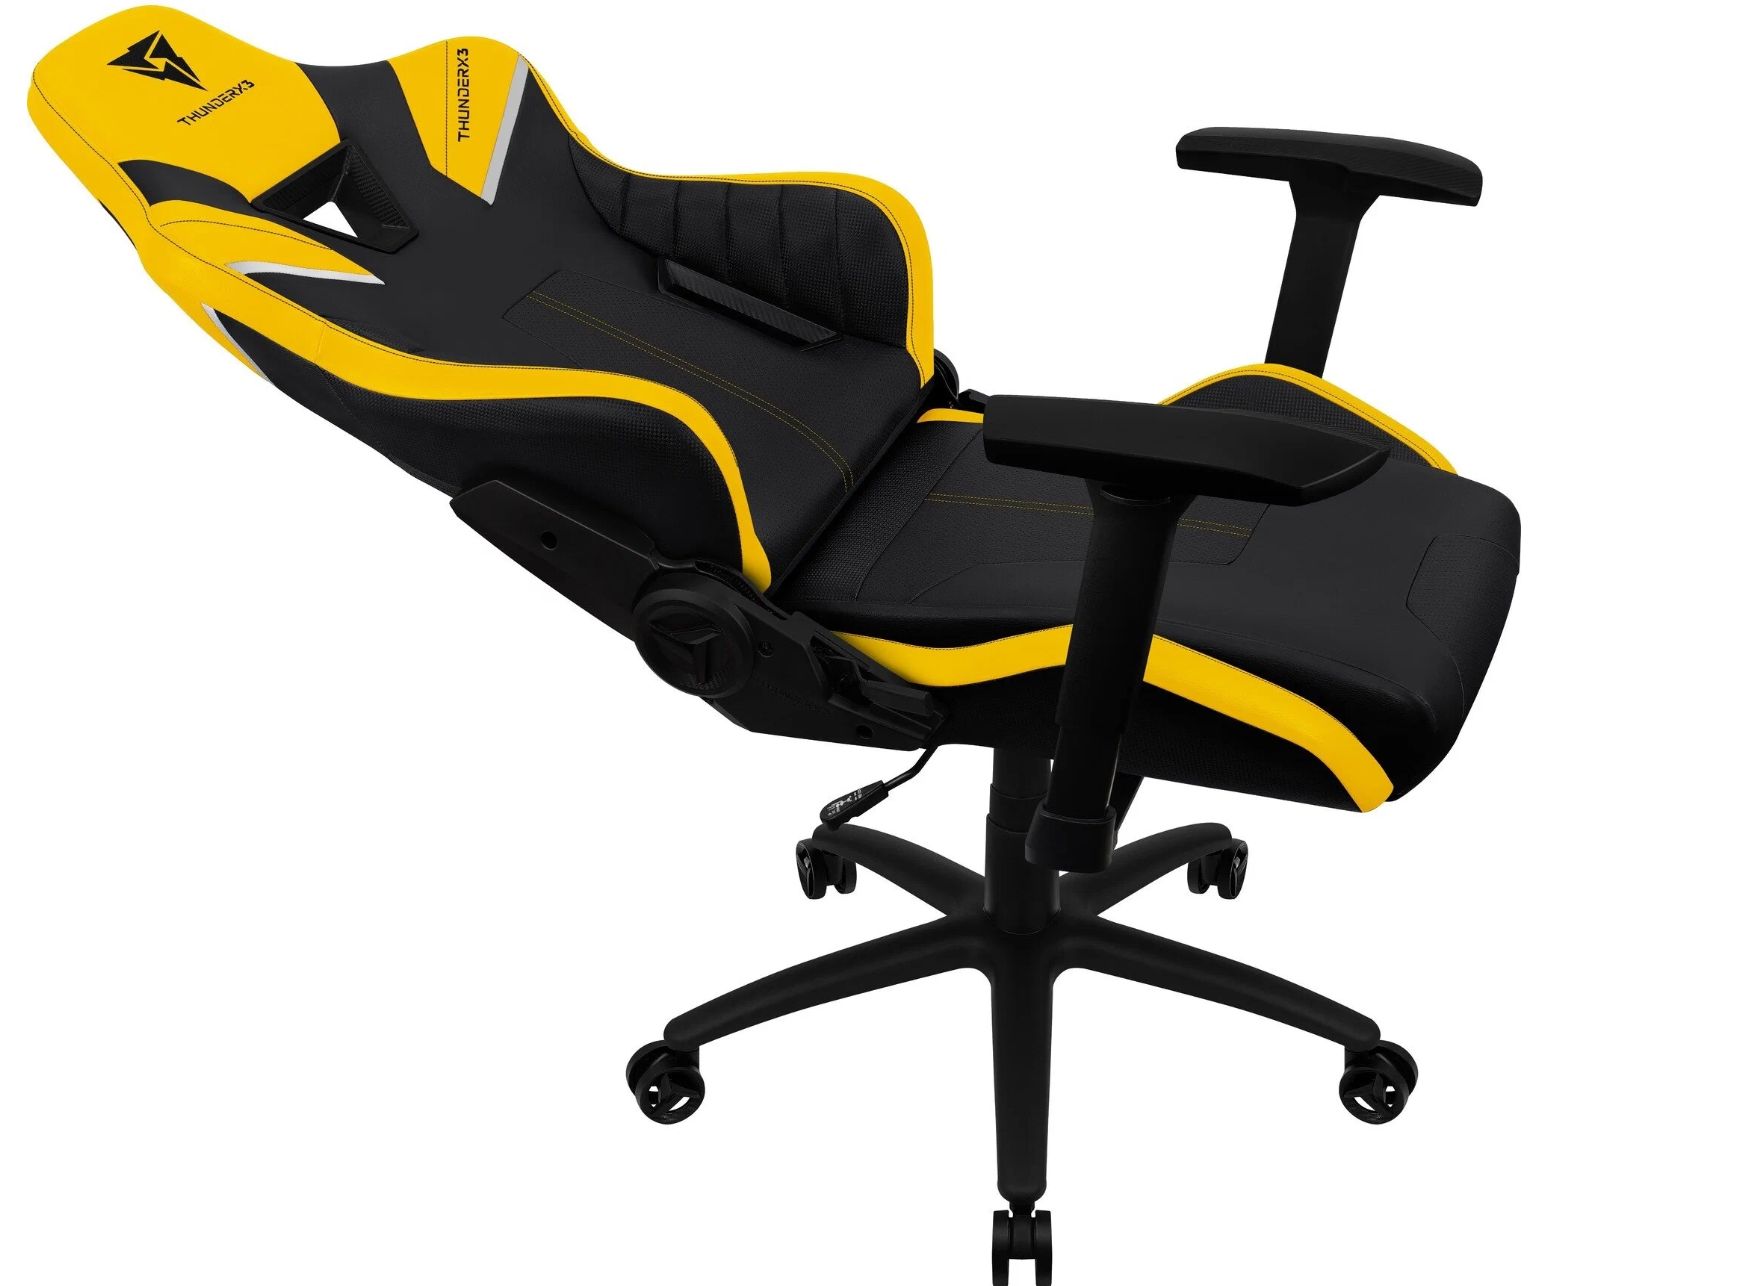 Компьютерное кресло thunderx3 tc3 игровое обивка искусственная кожа цвет arctic white